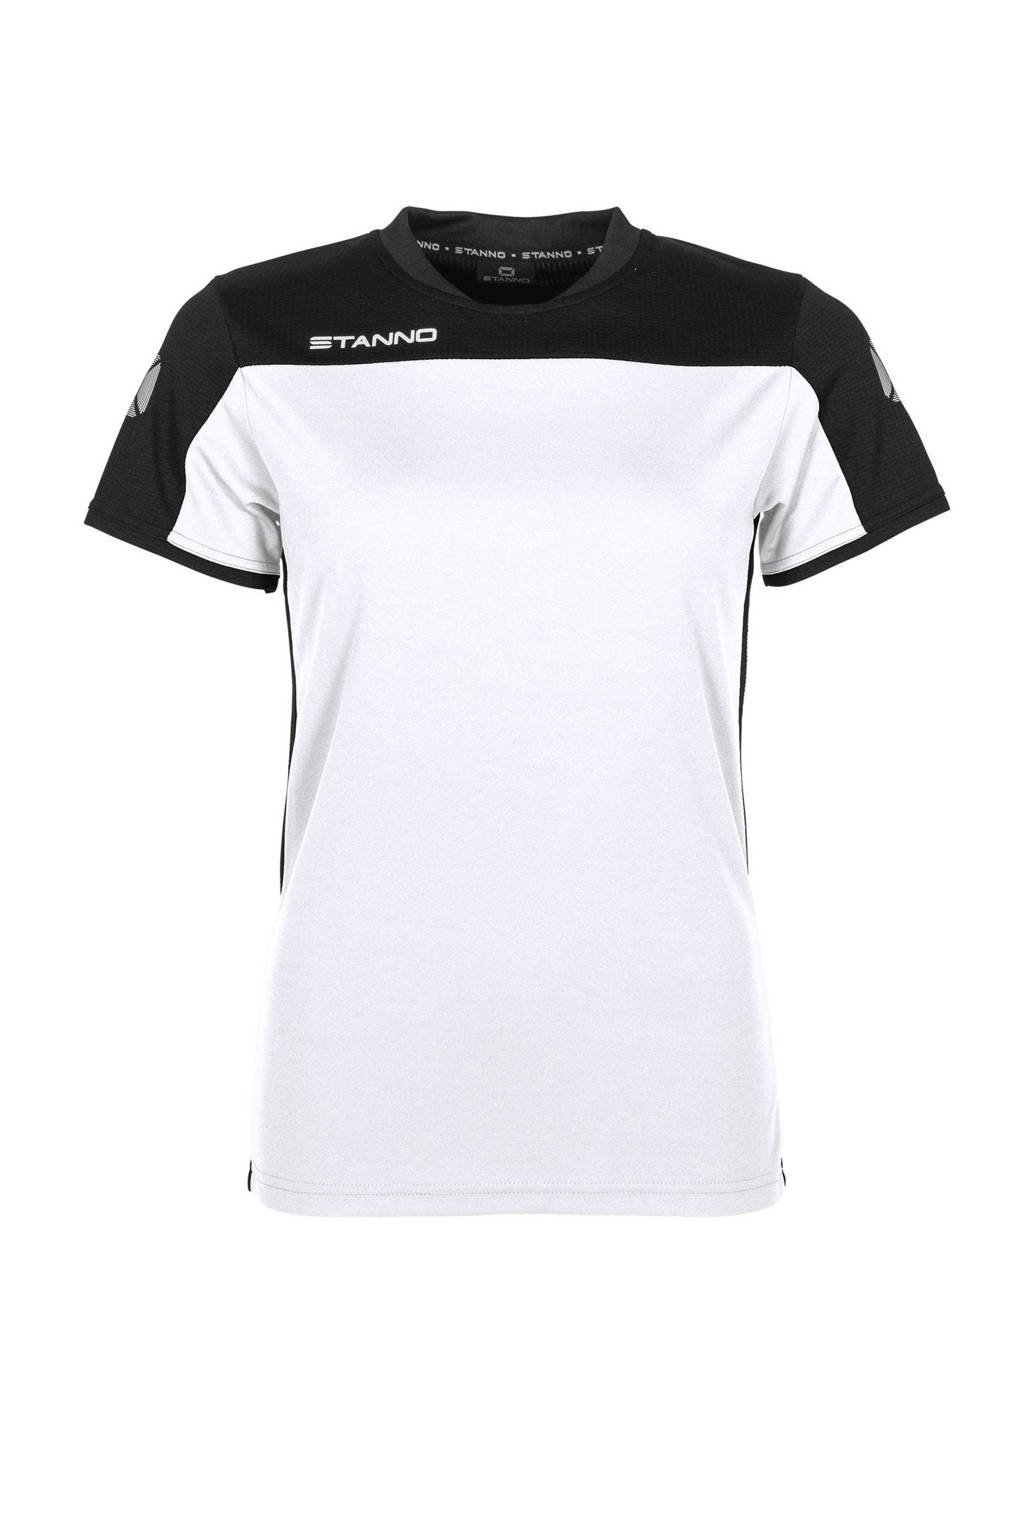 Stanno sport T-shirt wit/zwart, Wit/zwart